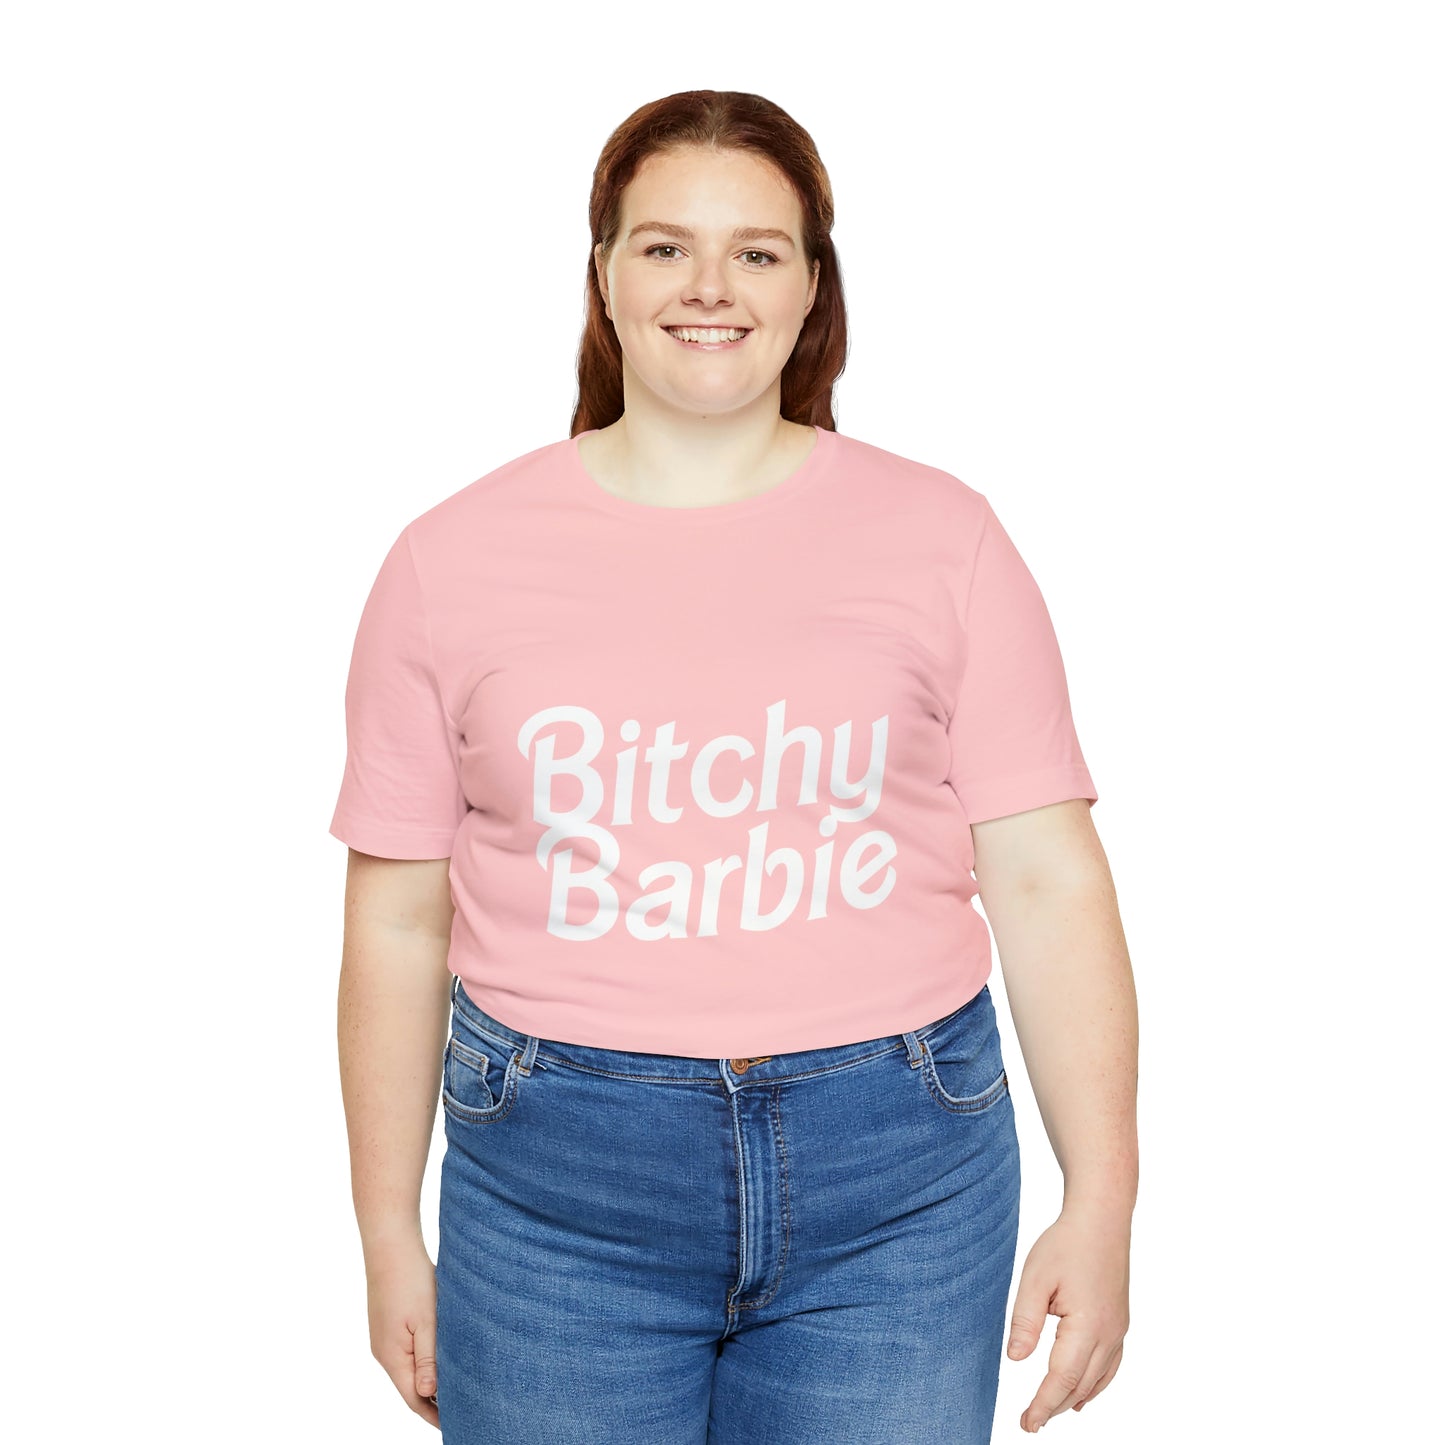 Bitchy Barbie